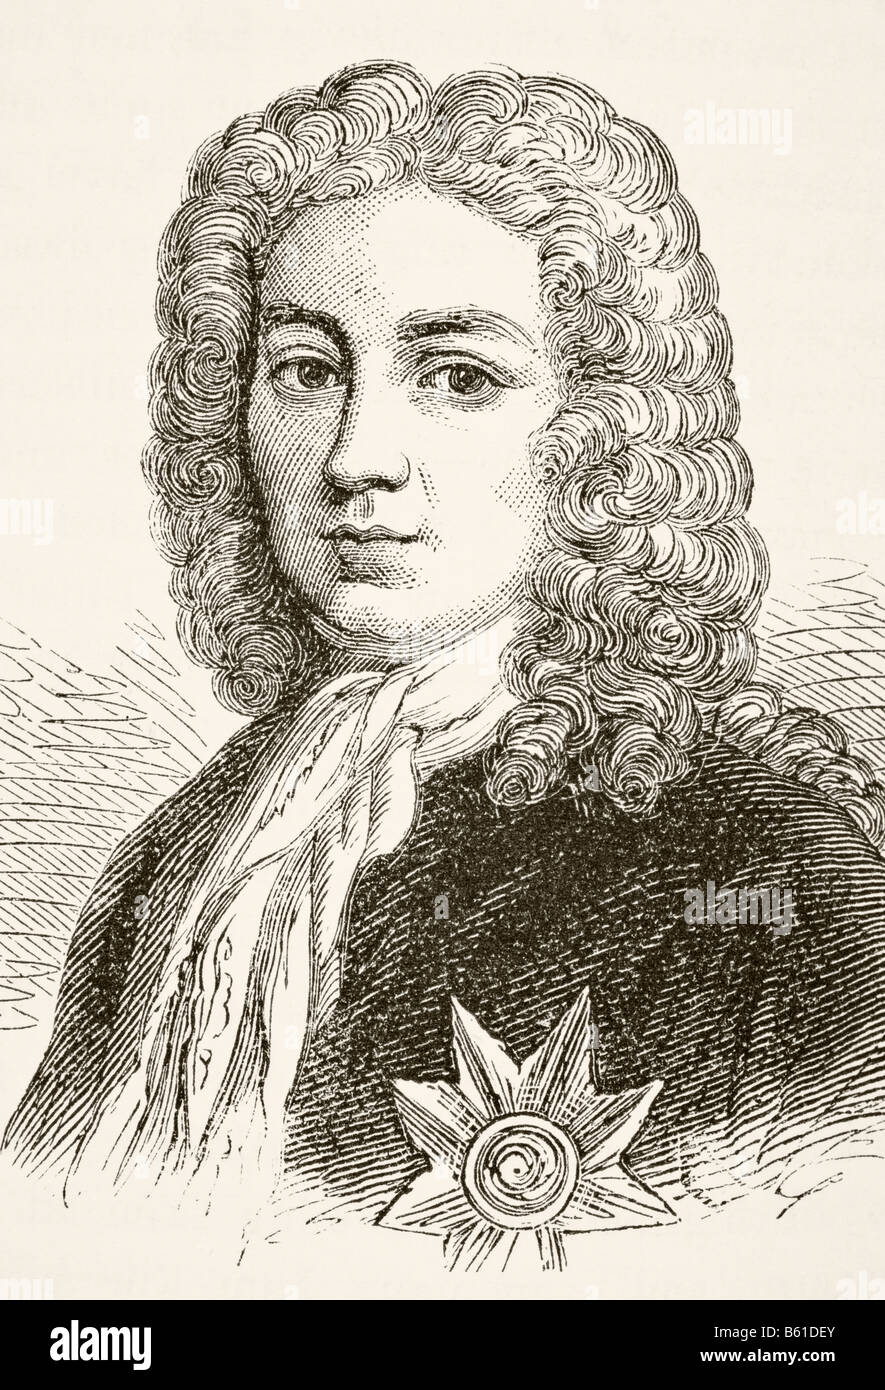 Robert Walpole, 1. Earl of Orford, 1676 - 1745. Englischer Staatsmann und erster Premierminister Großbritanniens. Stockfoto